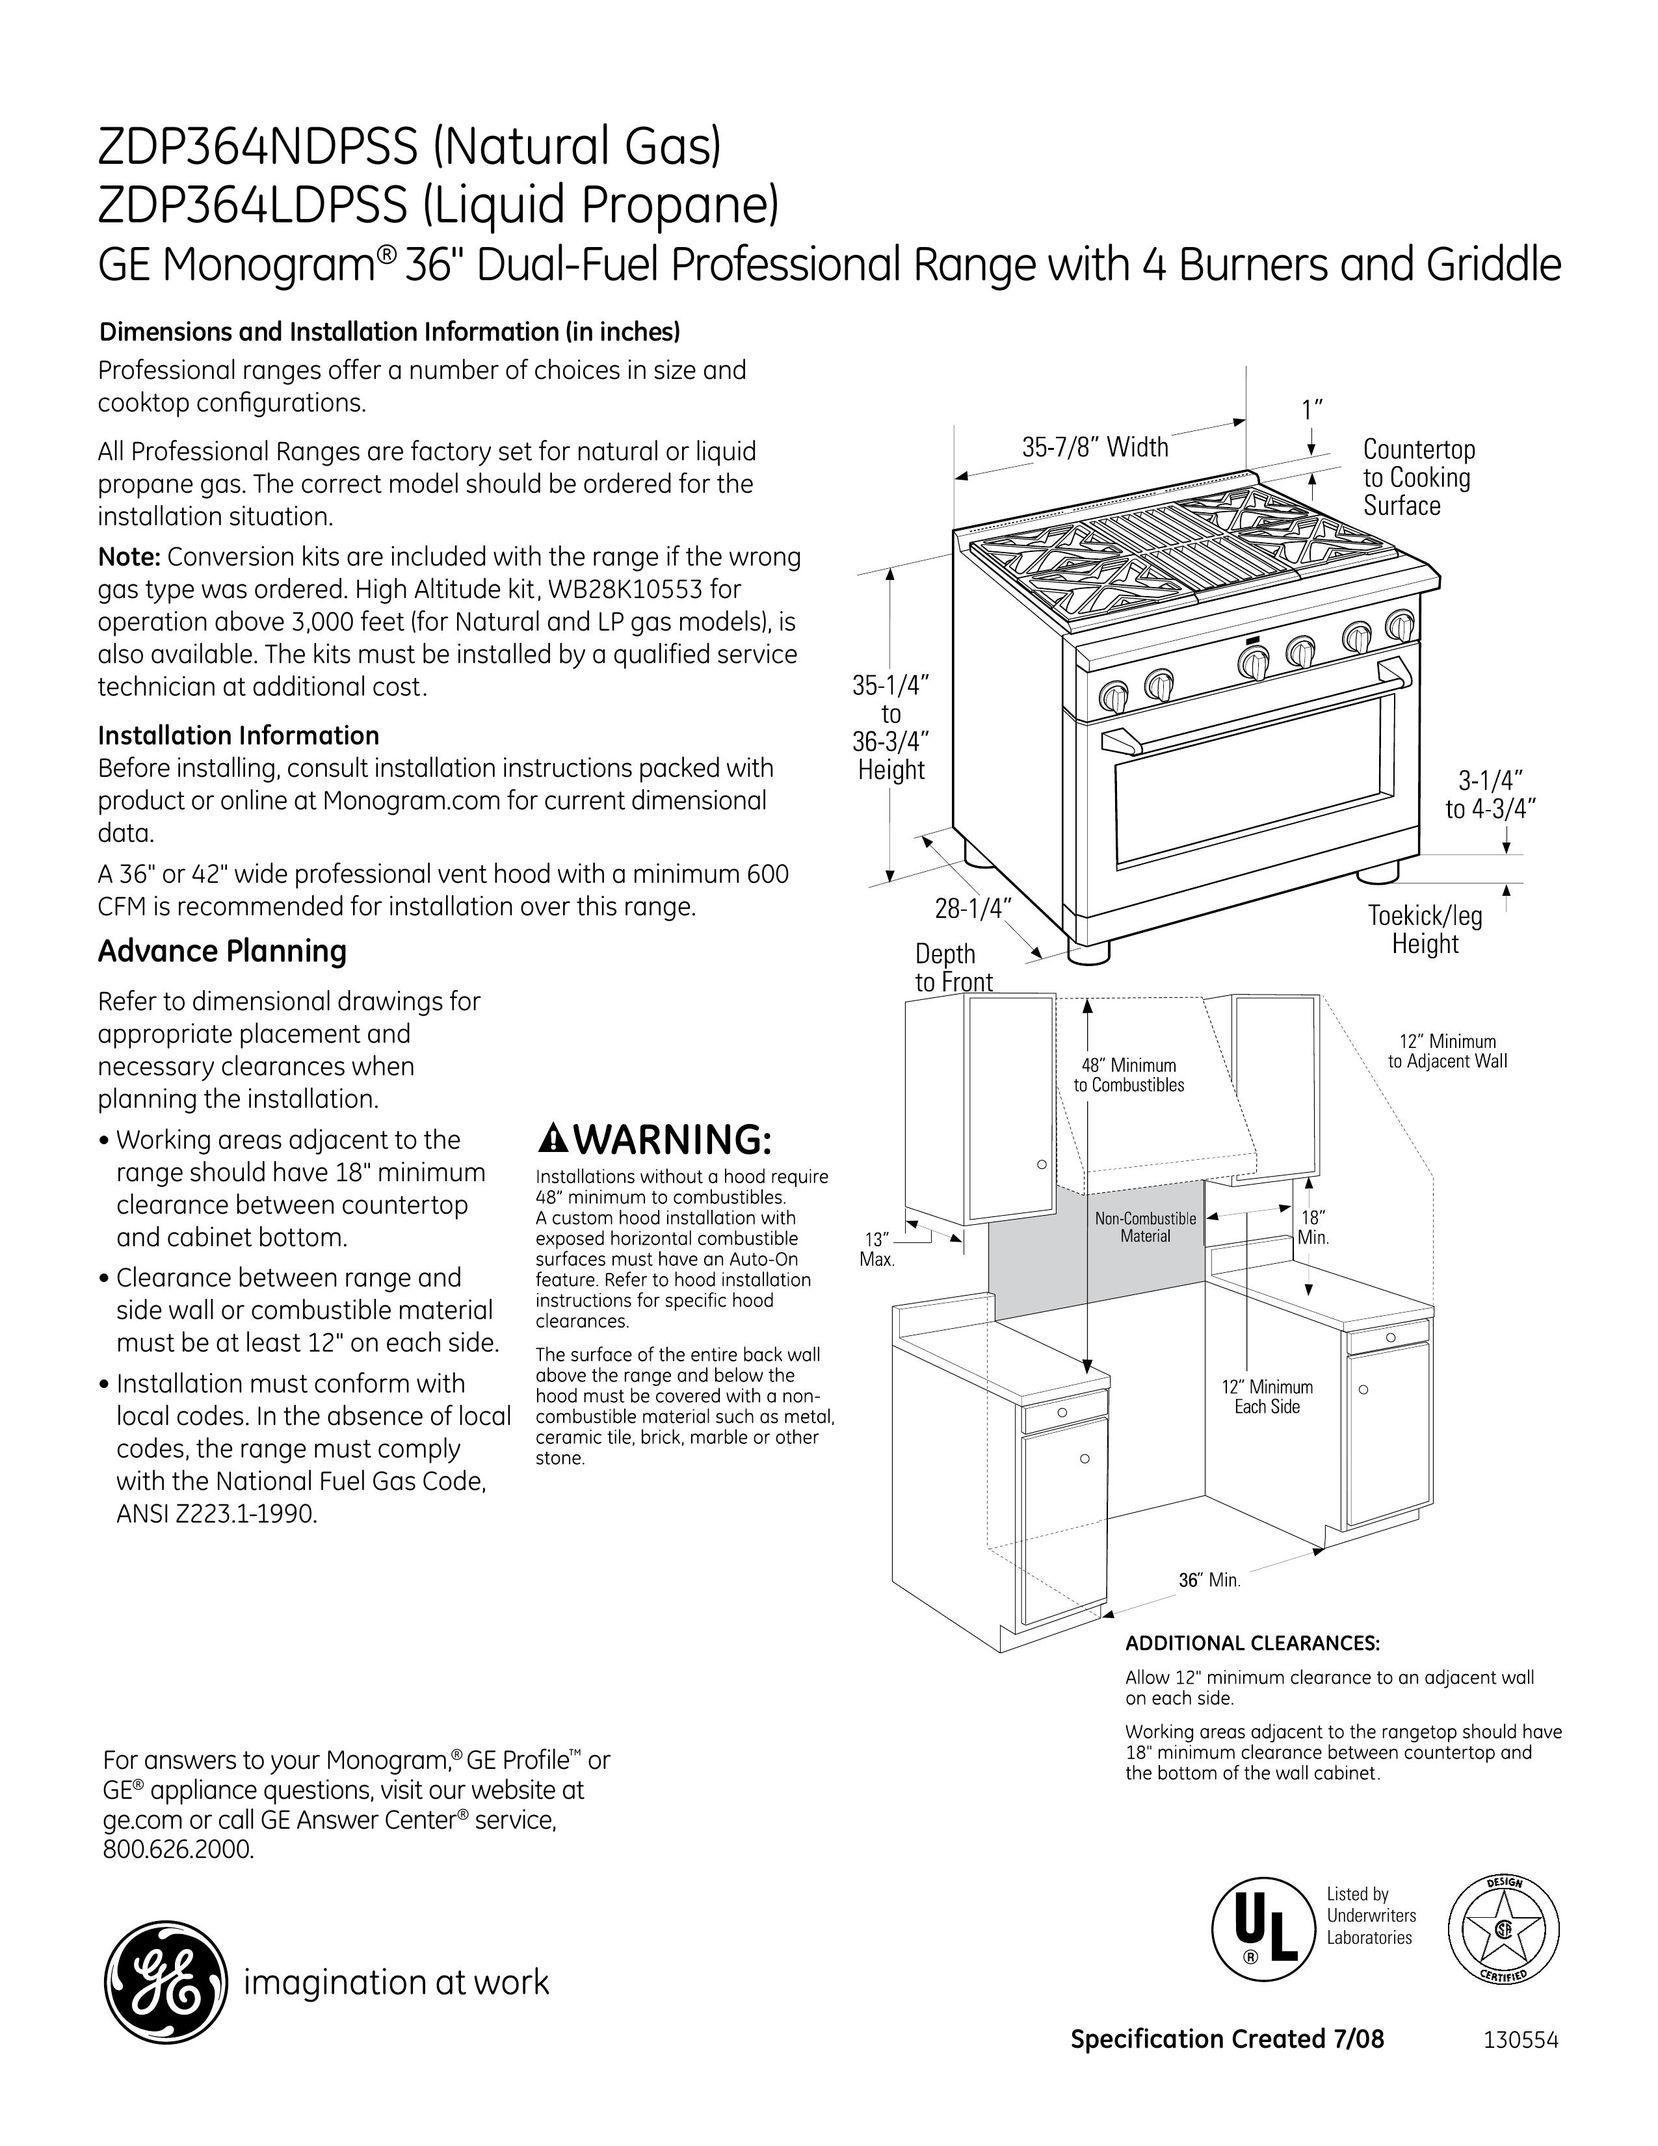 GE Monogram ZDP364NDPSS Range User Manual